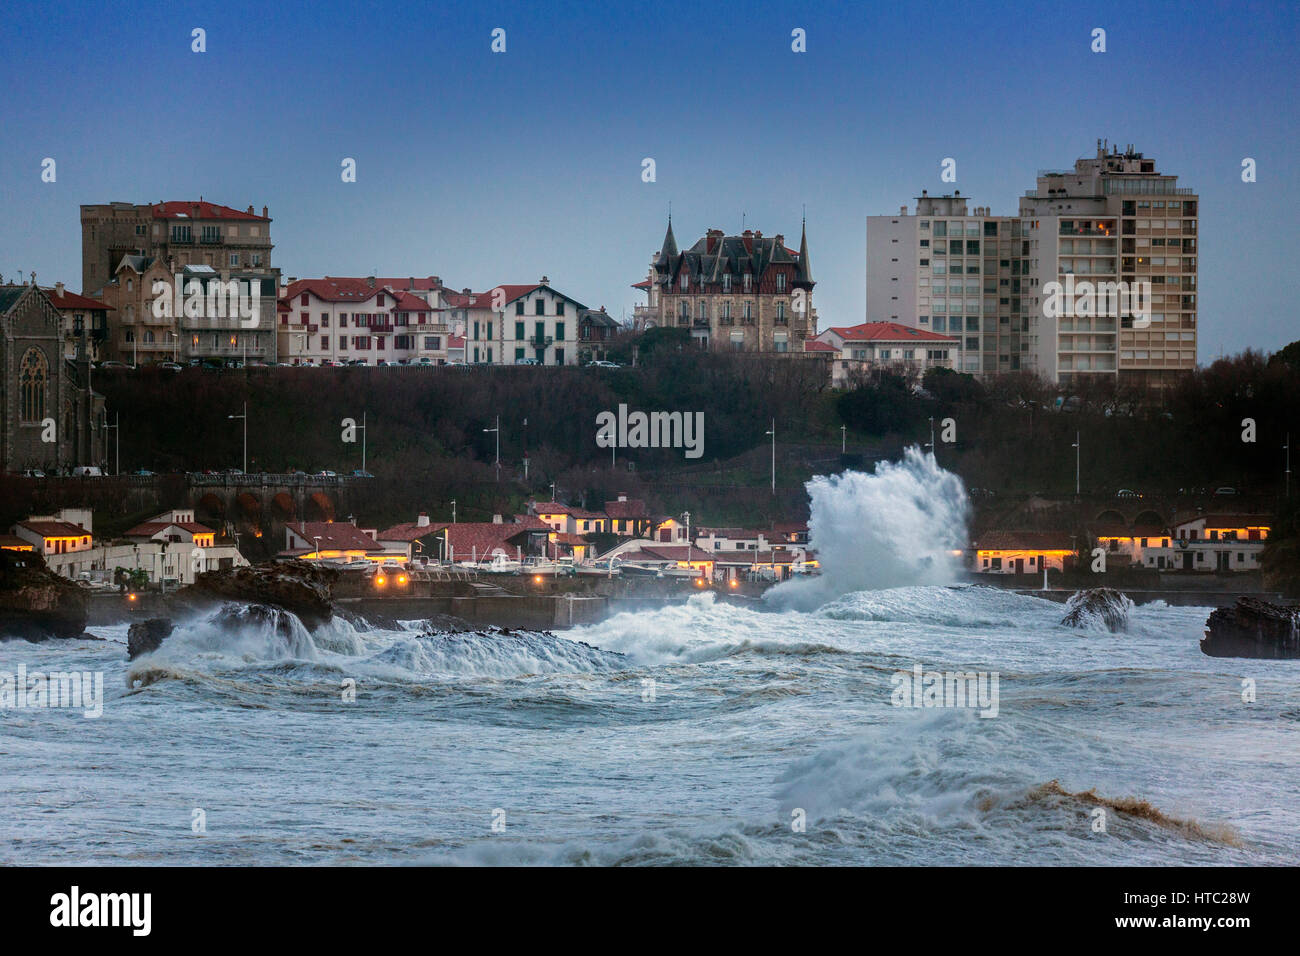 Die Stadt Biarritz durch ein stürmischer Tag (atlantischen Pyrenäen - Frankreich). Ville de Biarritz un Jour de Tempête (Pyrénées-Atlantiques - Aquitaine - Frankreich). Stockfoto